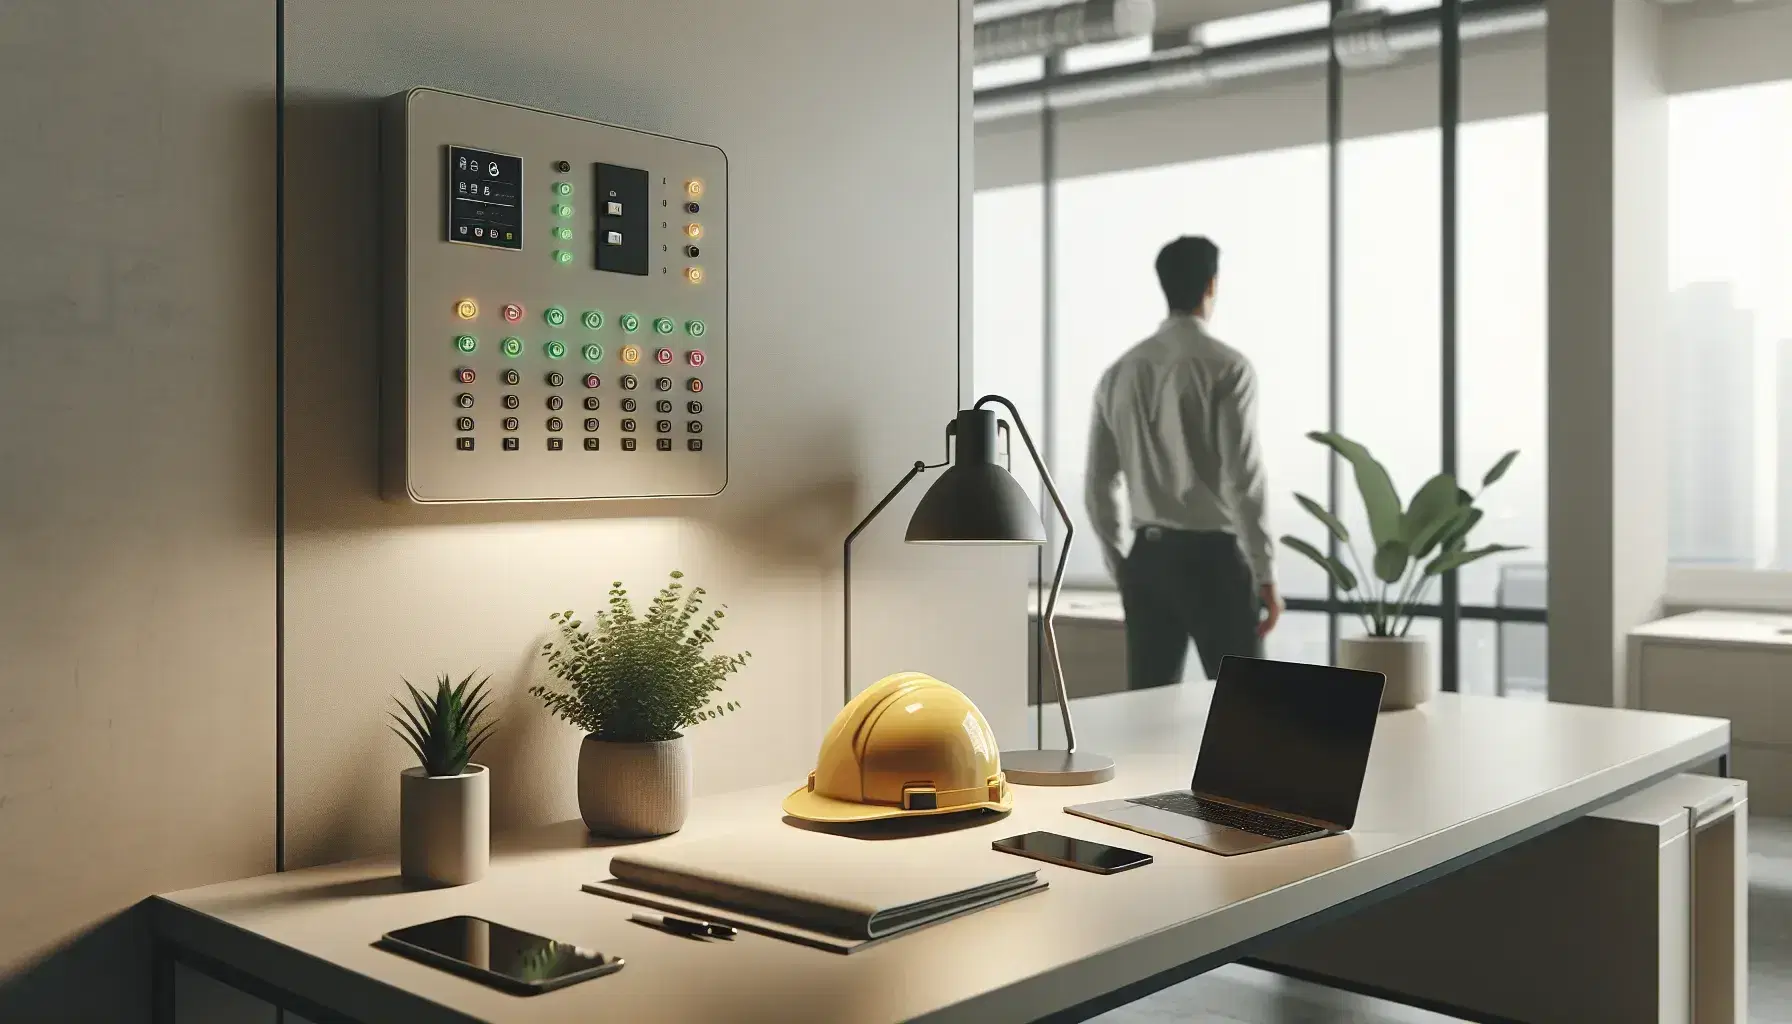 Oficina moderna con escritorio que tiene laptop, smartphone y planta, casco de seguridad amarillo y persona ajustando panel de control.